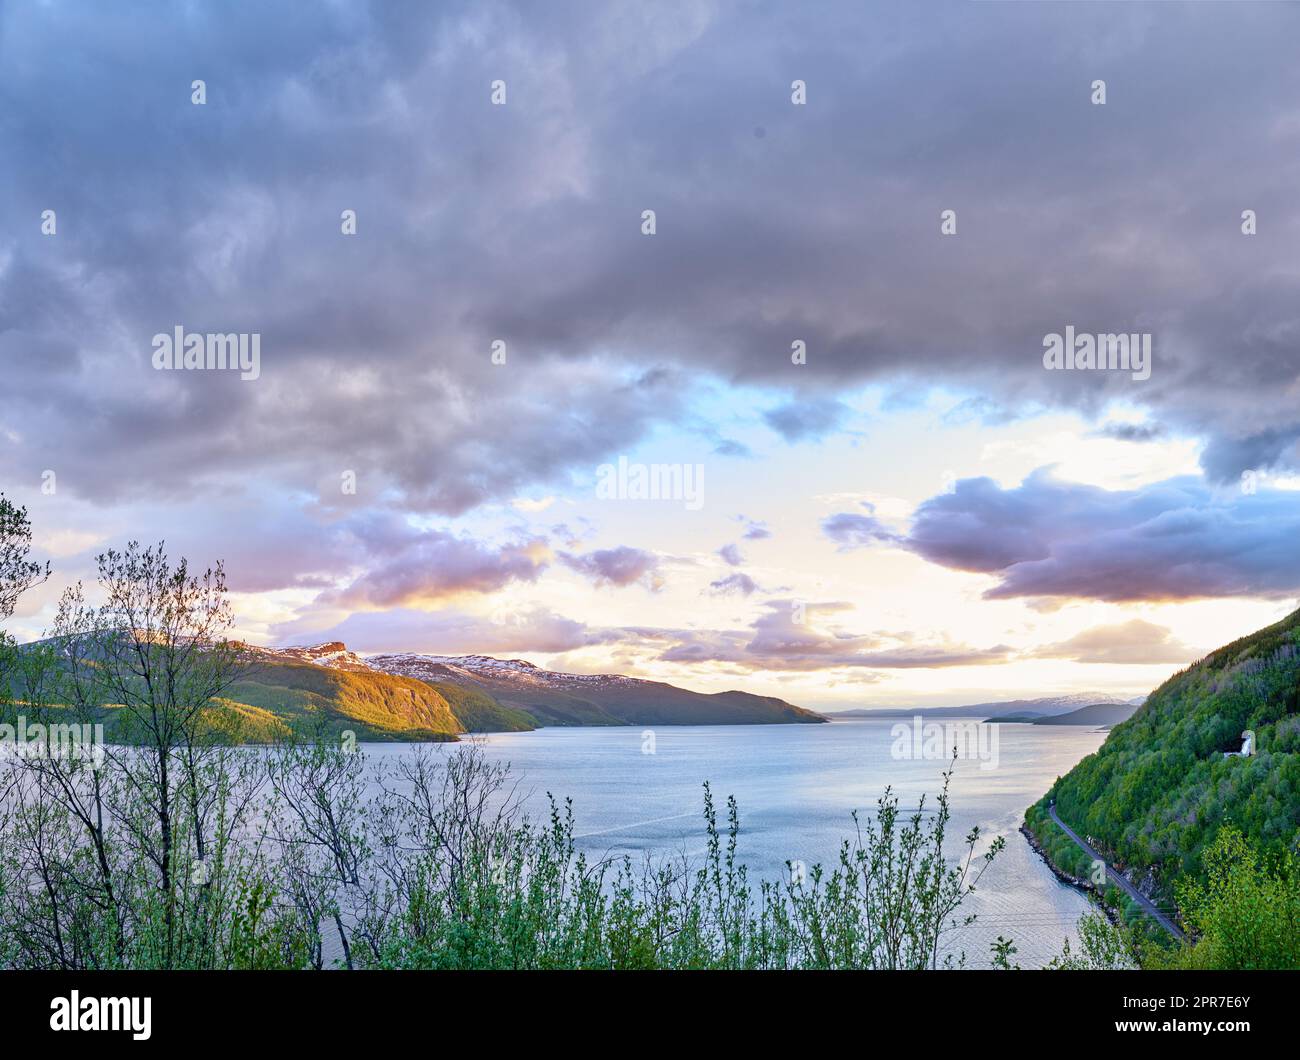 Vue panoramique sur un lac, l'océan ou la mer avec ciel nuageux au coucher du soleil et copier l'espace.arbres non cultivés, buissons, arbustes autour d'une baie d'eau en Norvège. Paysage de calme, serein, paisible, paisible étang de la nature Banque D'Images